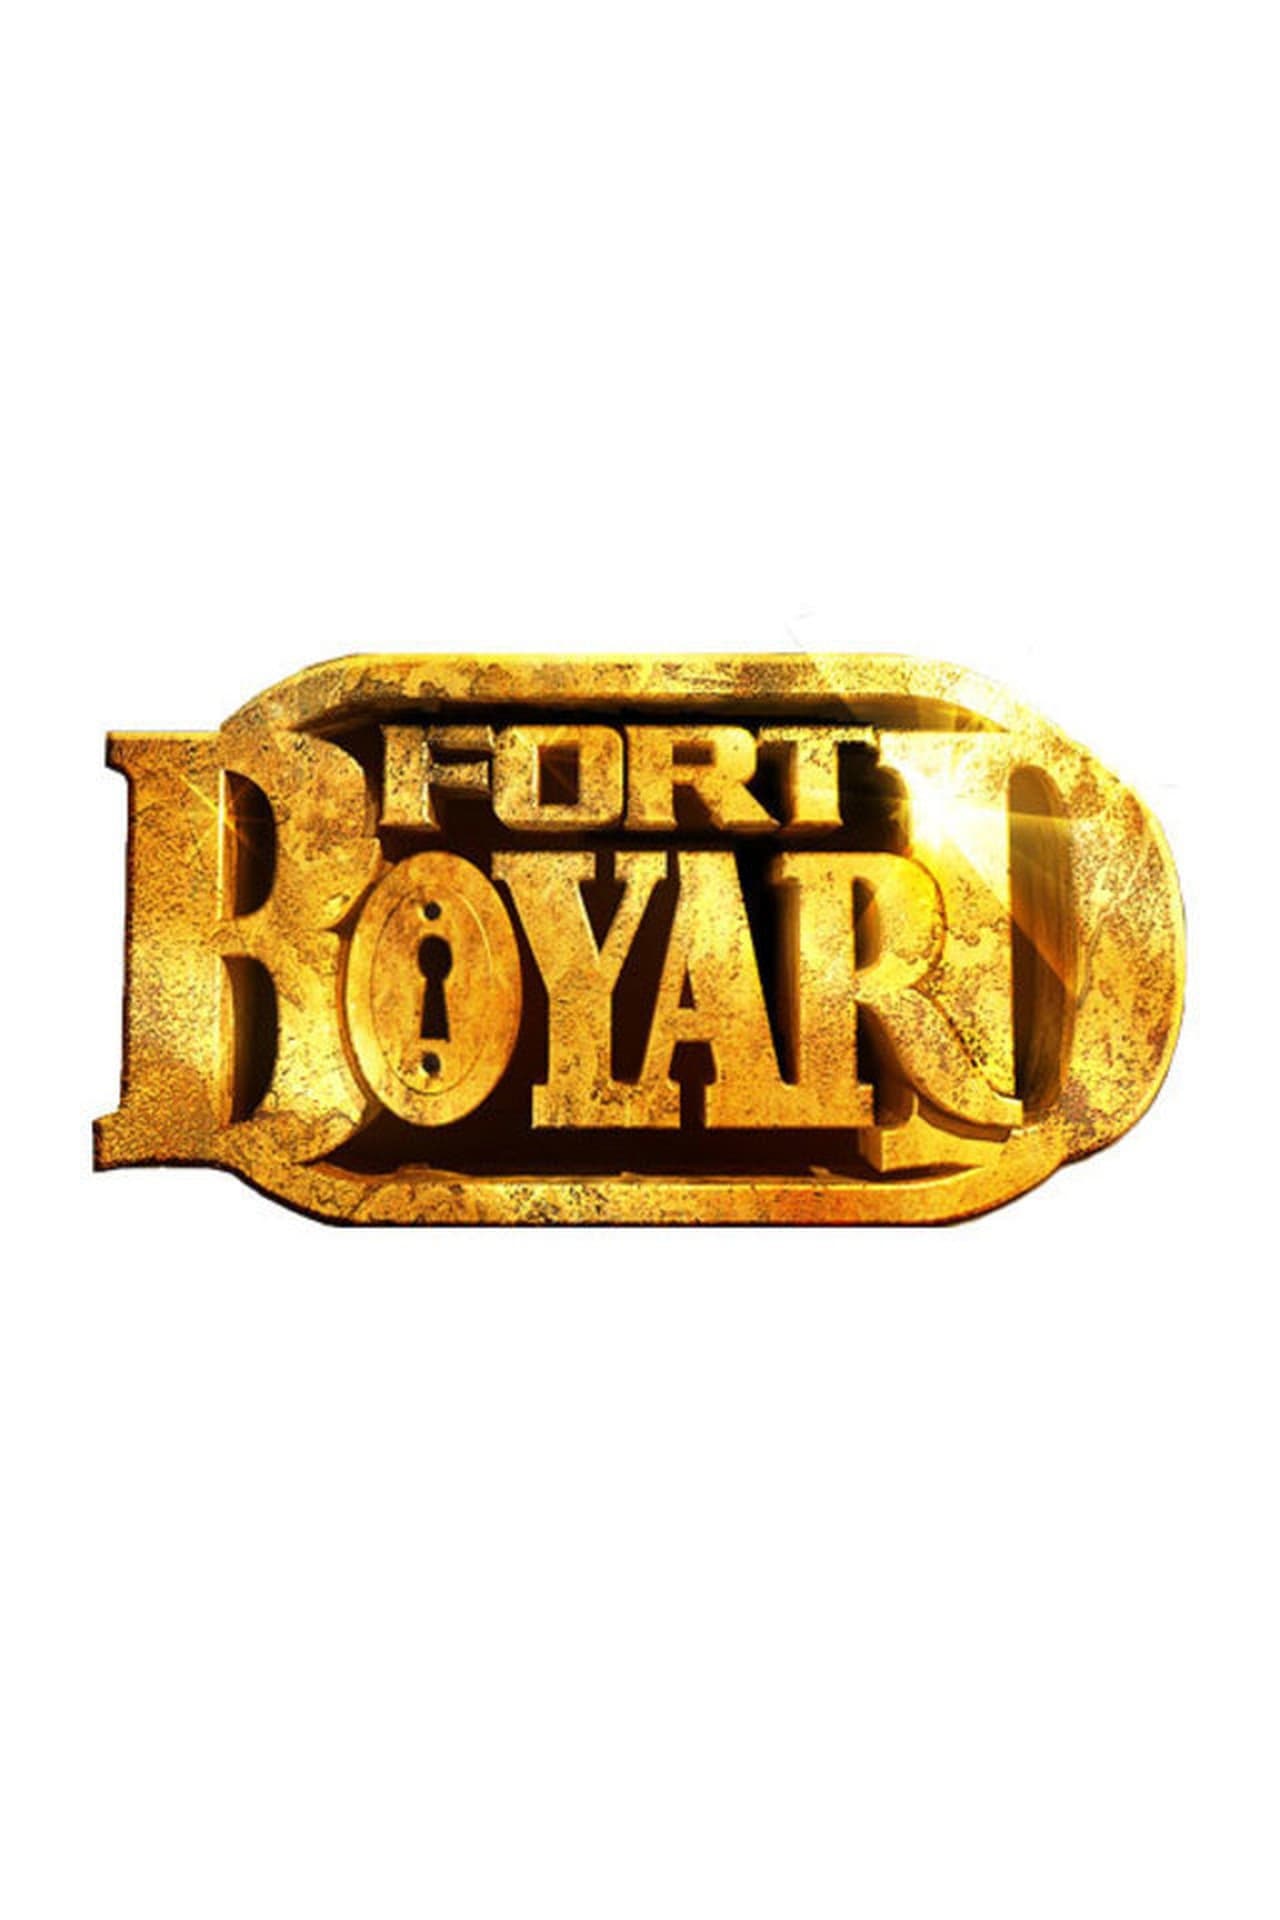 Fort Boyard Season 0